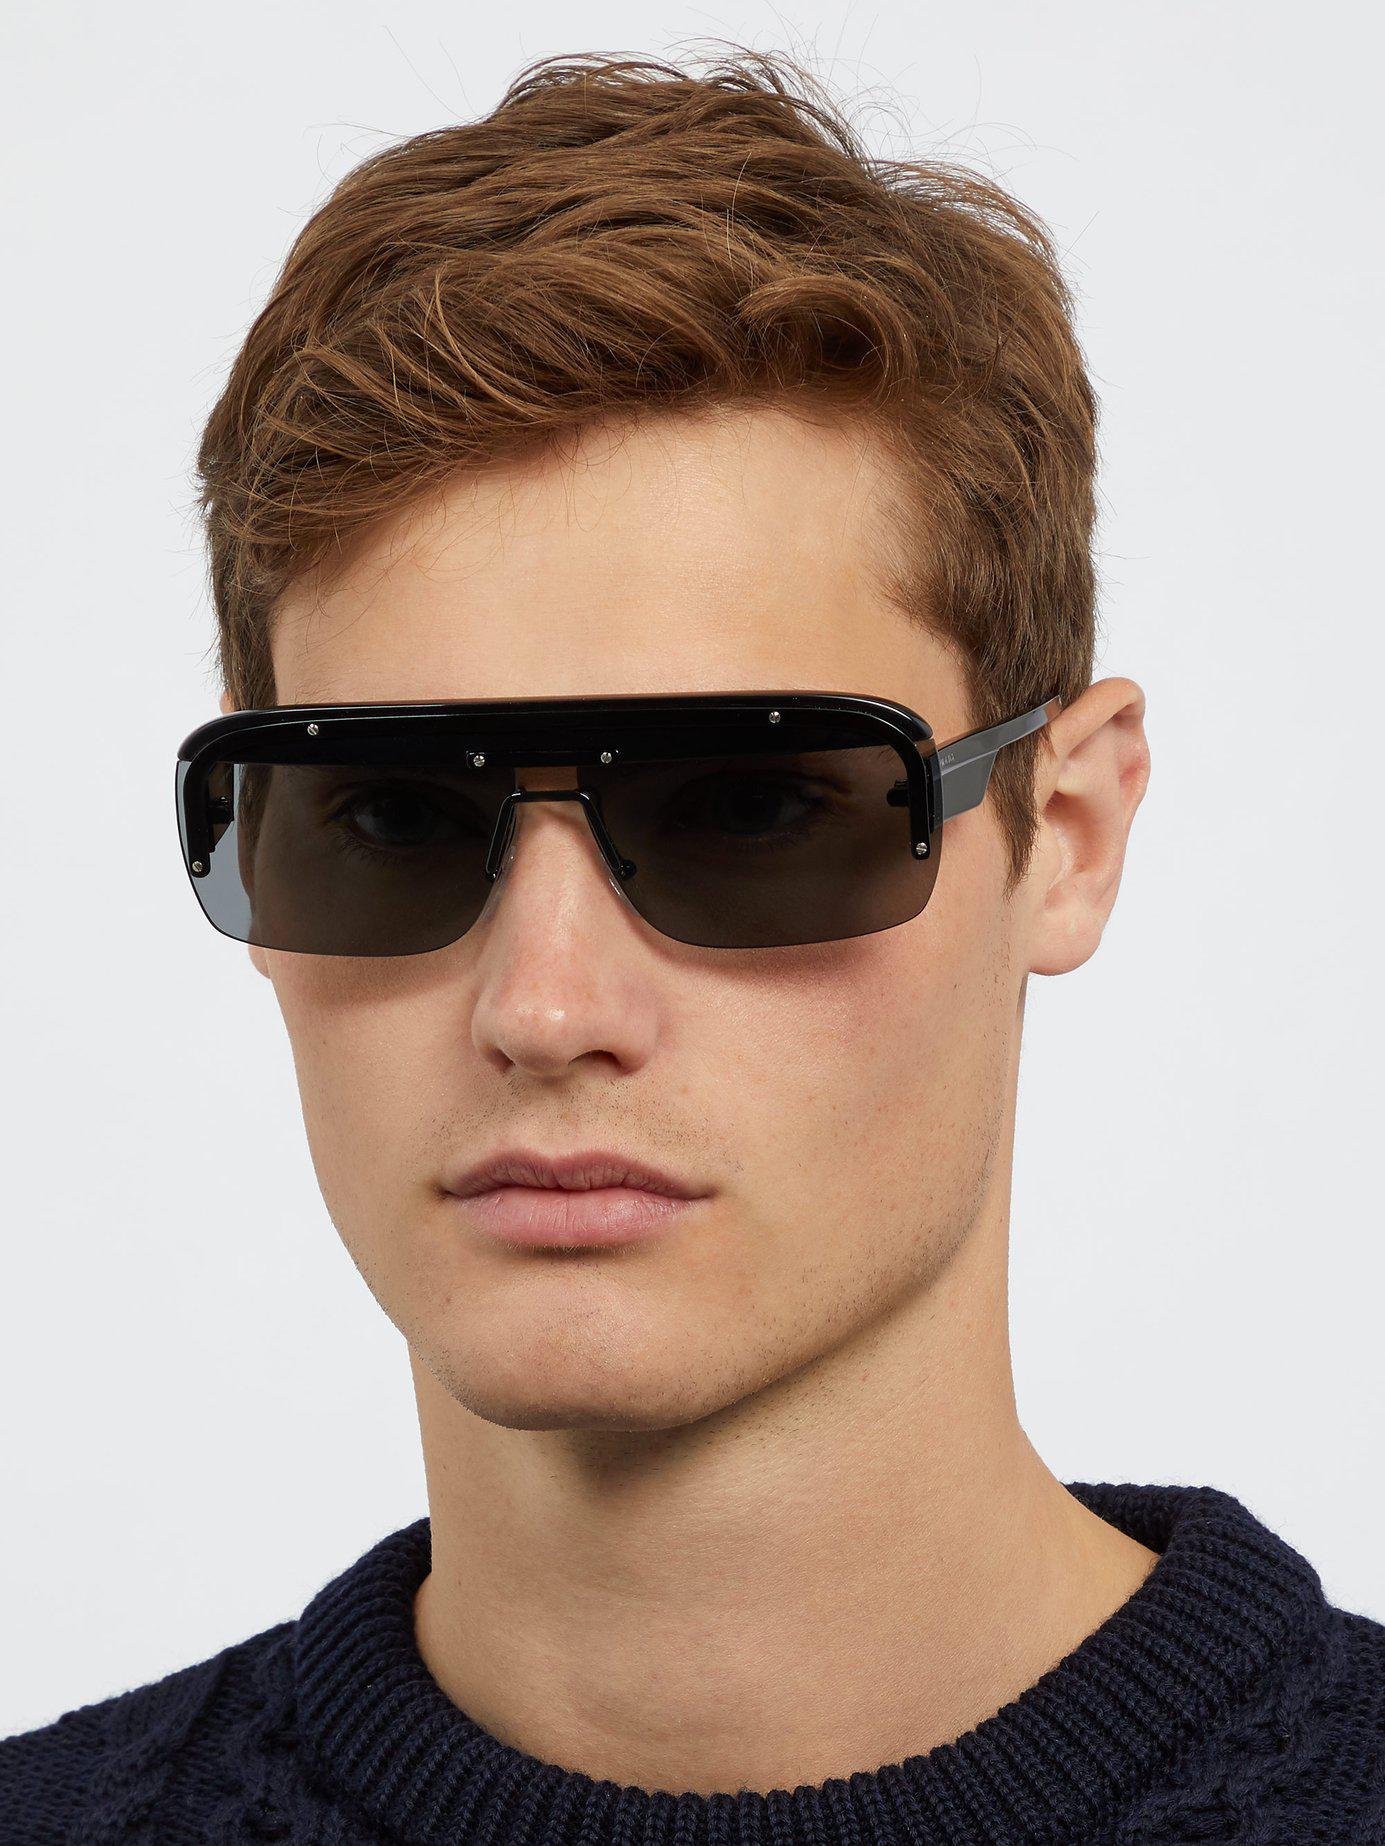 prada d frame sunglasses